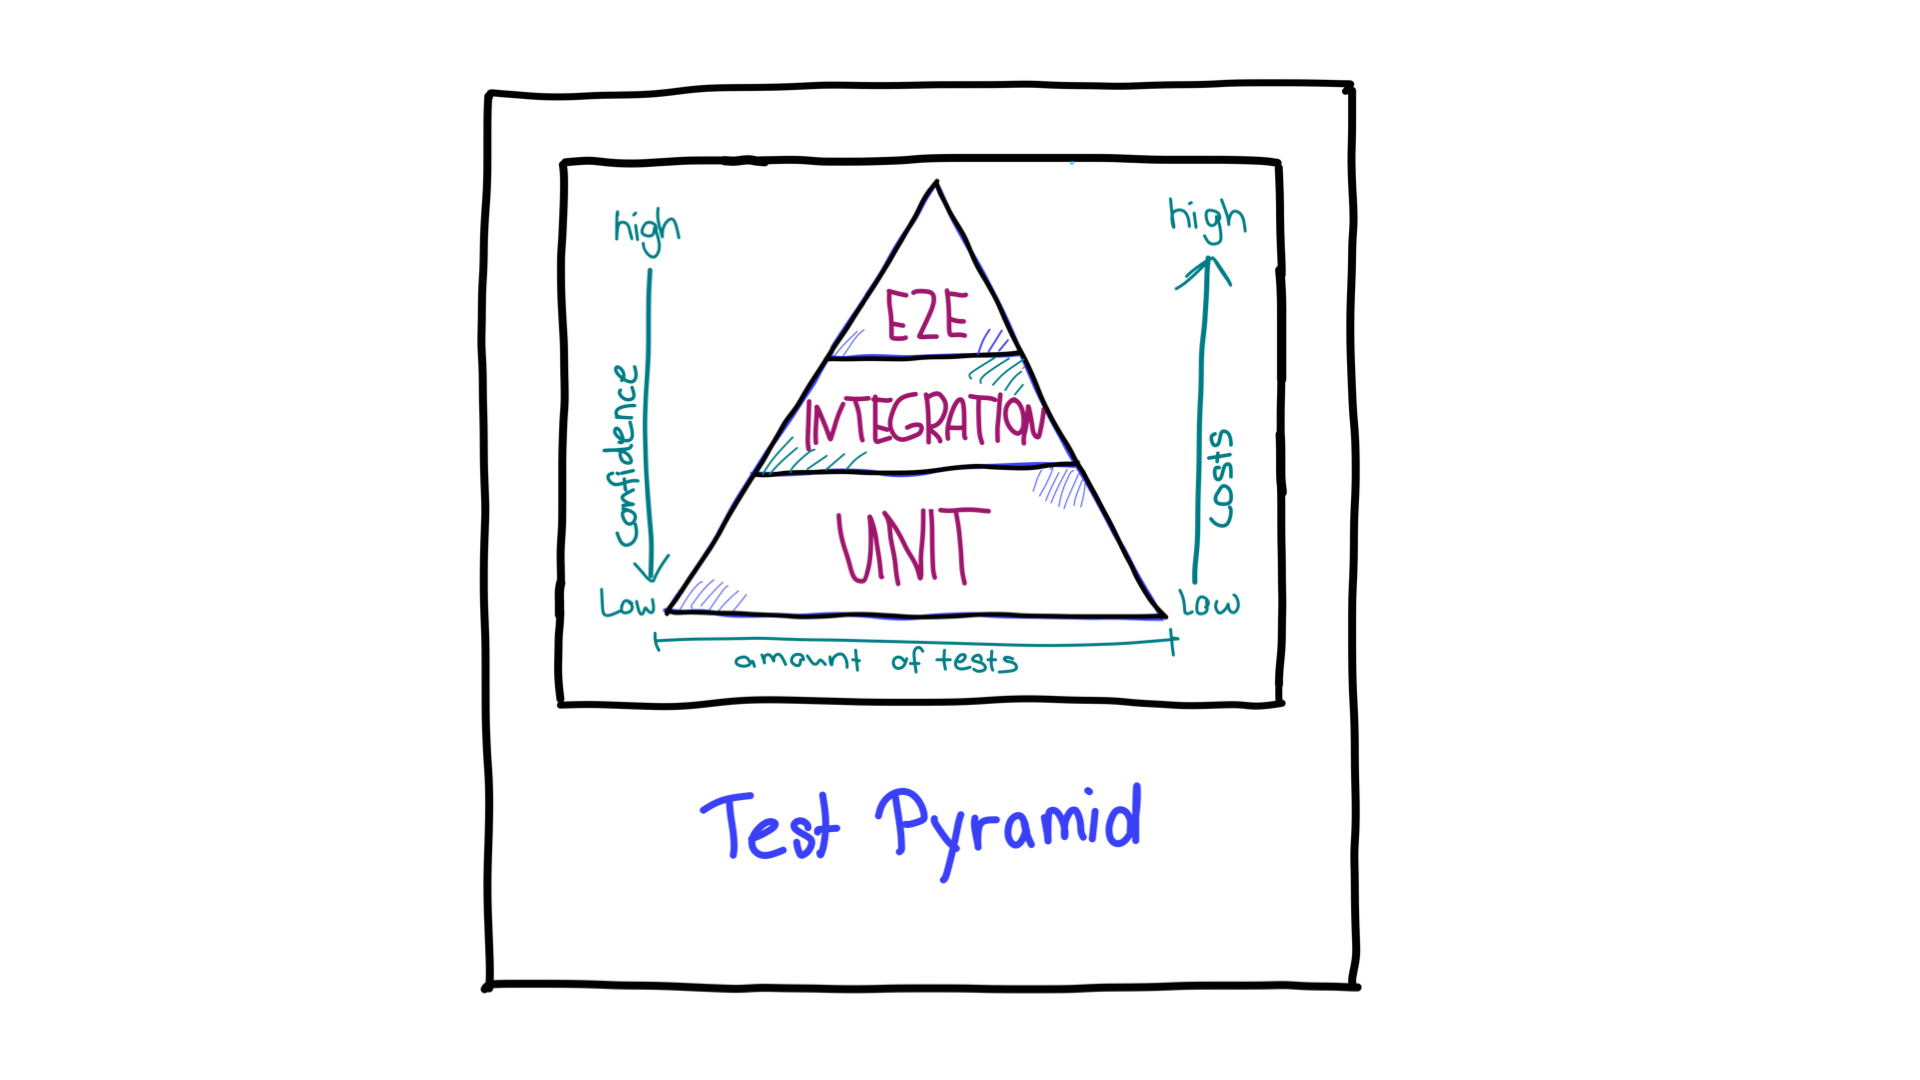 다양한 테스트 유형에 필요한 신뢰도와 리소스의 방향을 보여주는 화살표가 있는 테스트 피라미드